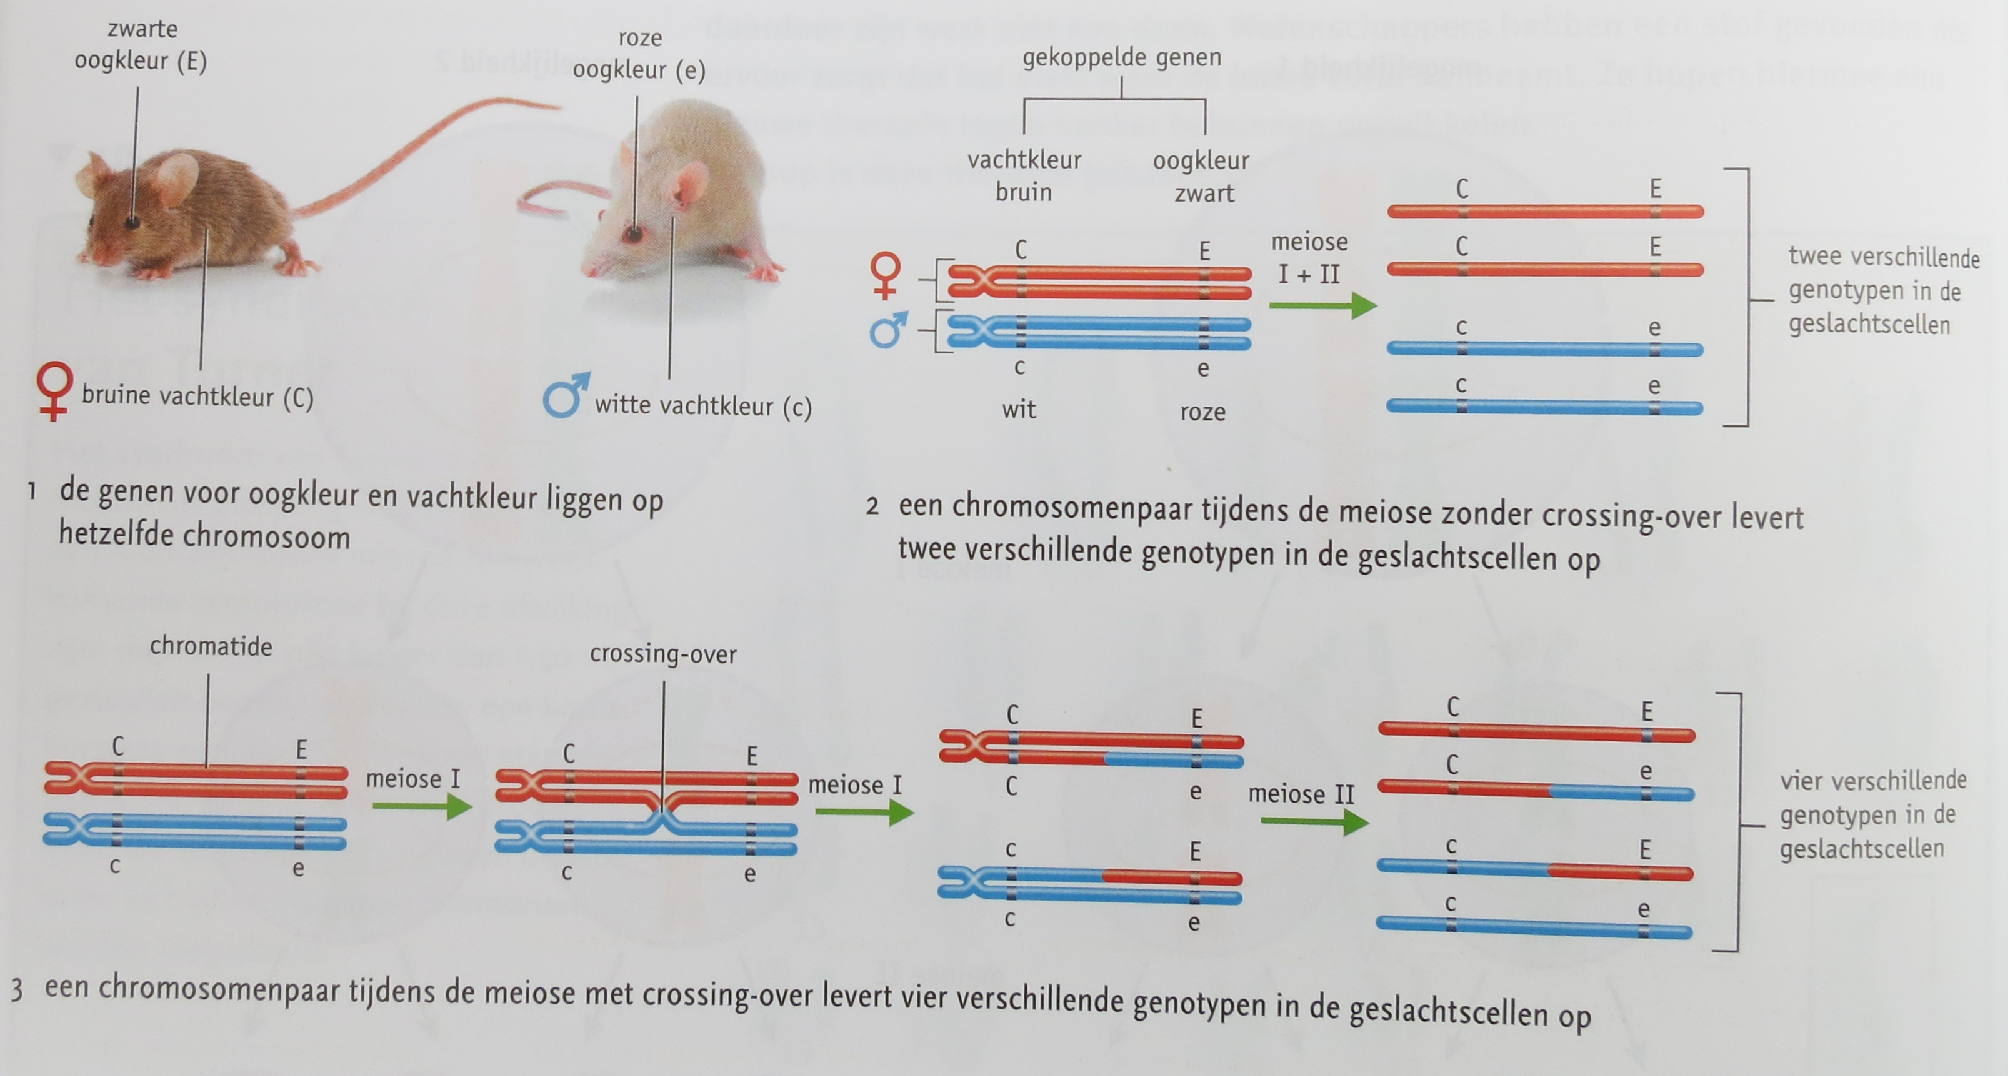 124 Crossing-over Wanneer de chromosomen zich spiraliseren, kunnen de chromatiden van 2 homologe chromosomen in elkaar verstrengeld raken.